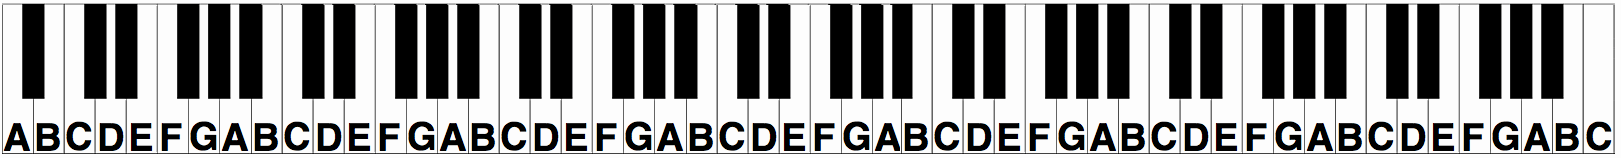 piano-keyboard-layout